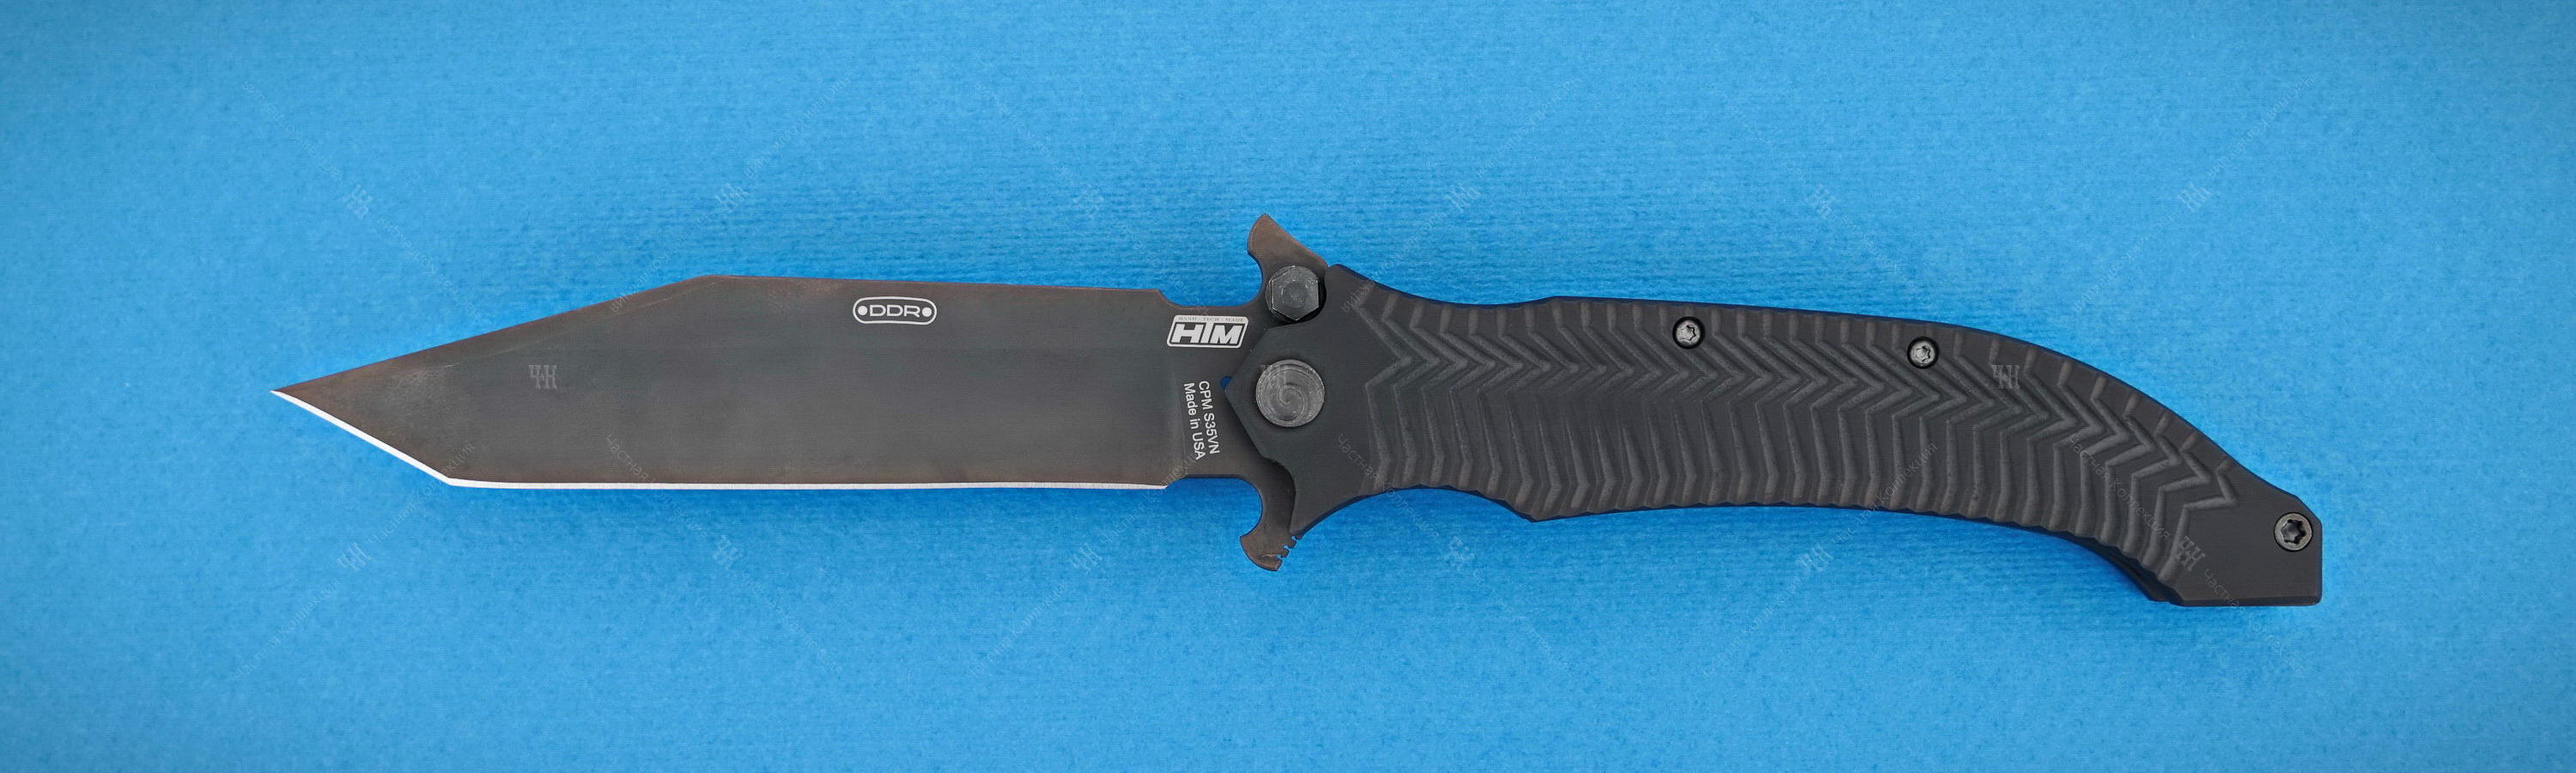 HTM Knives AXD 5.5